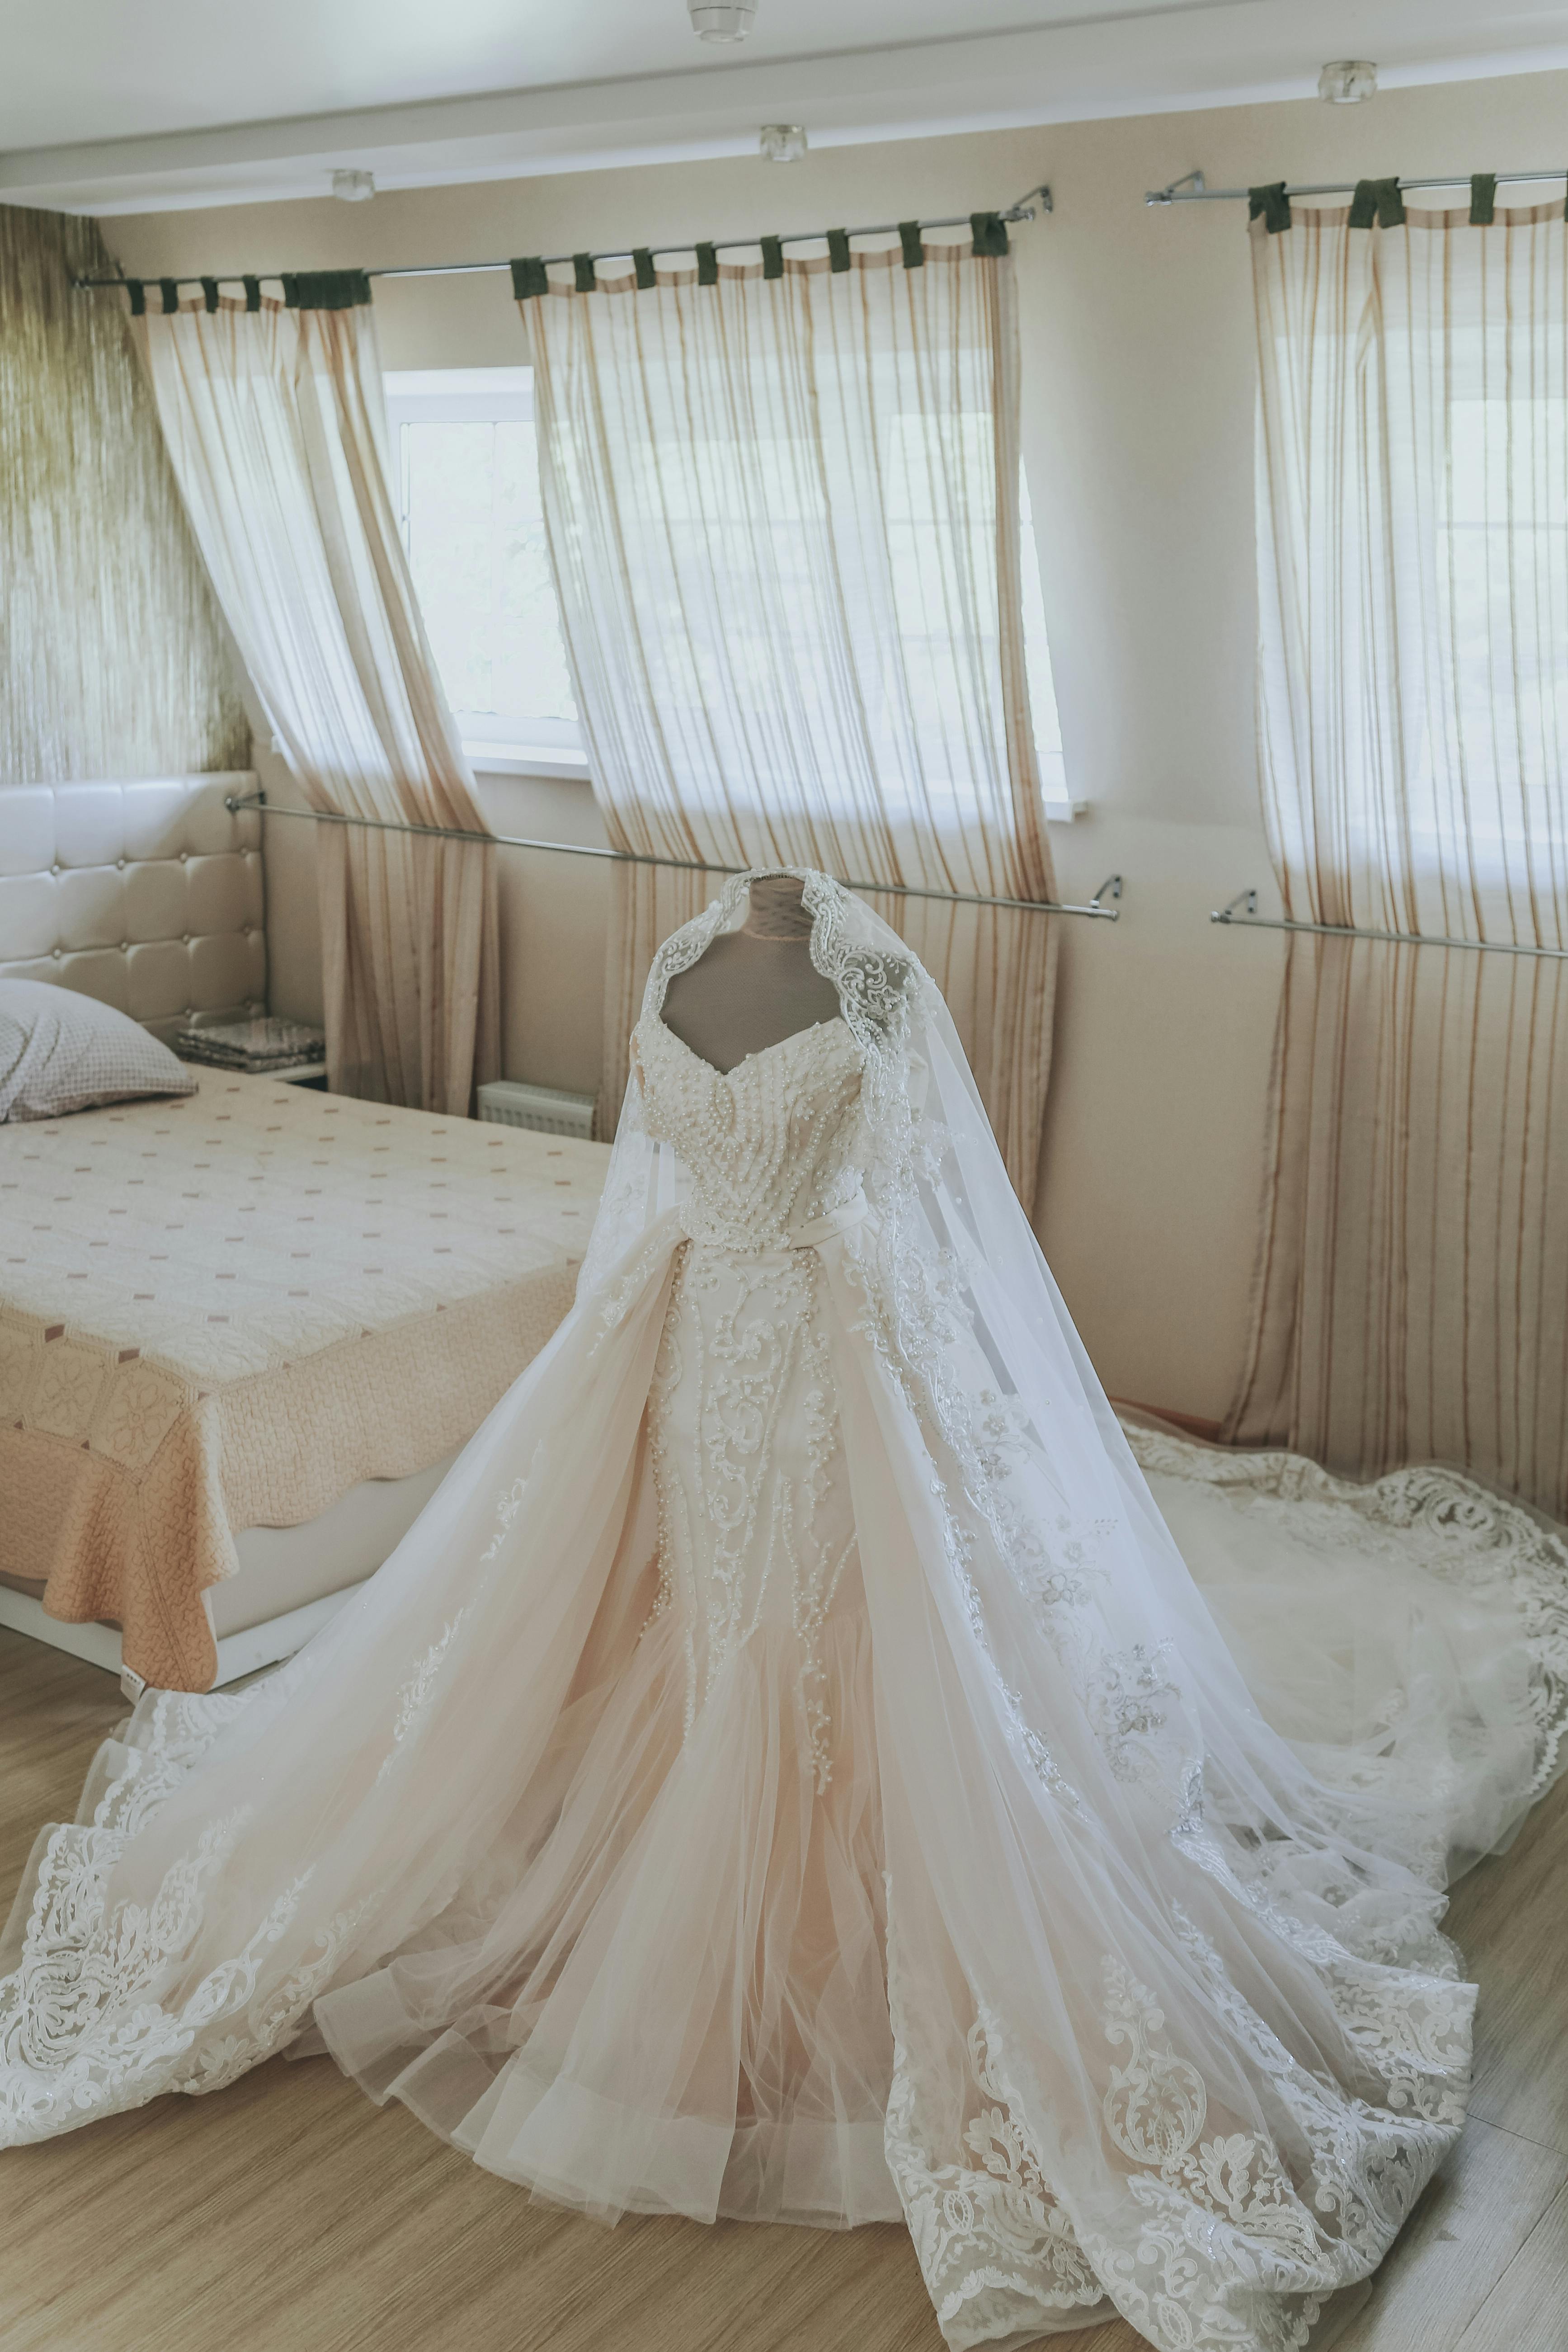 Beautiful white wedding dress on ...